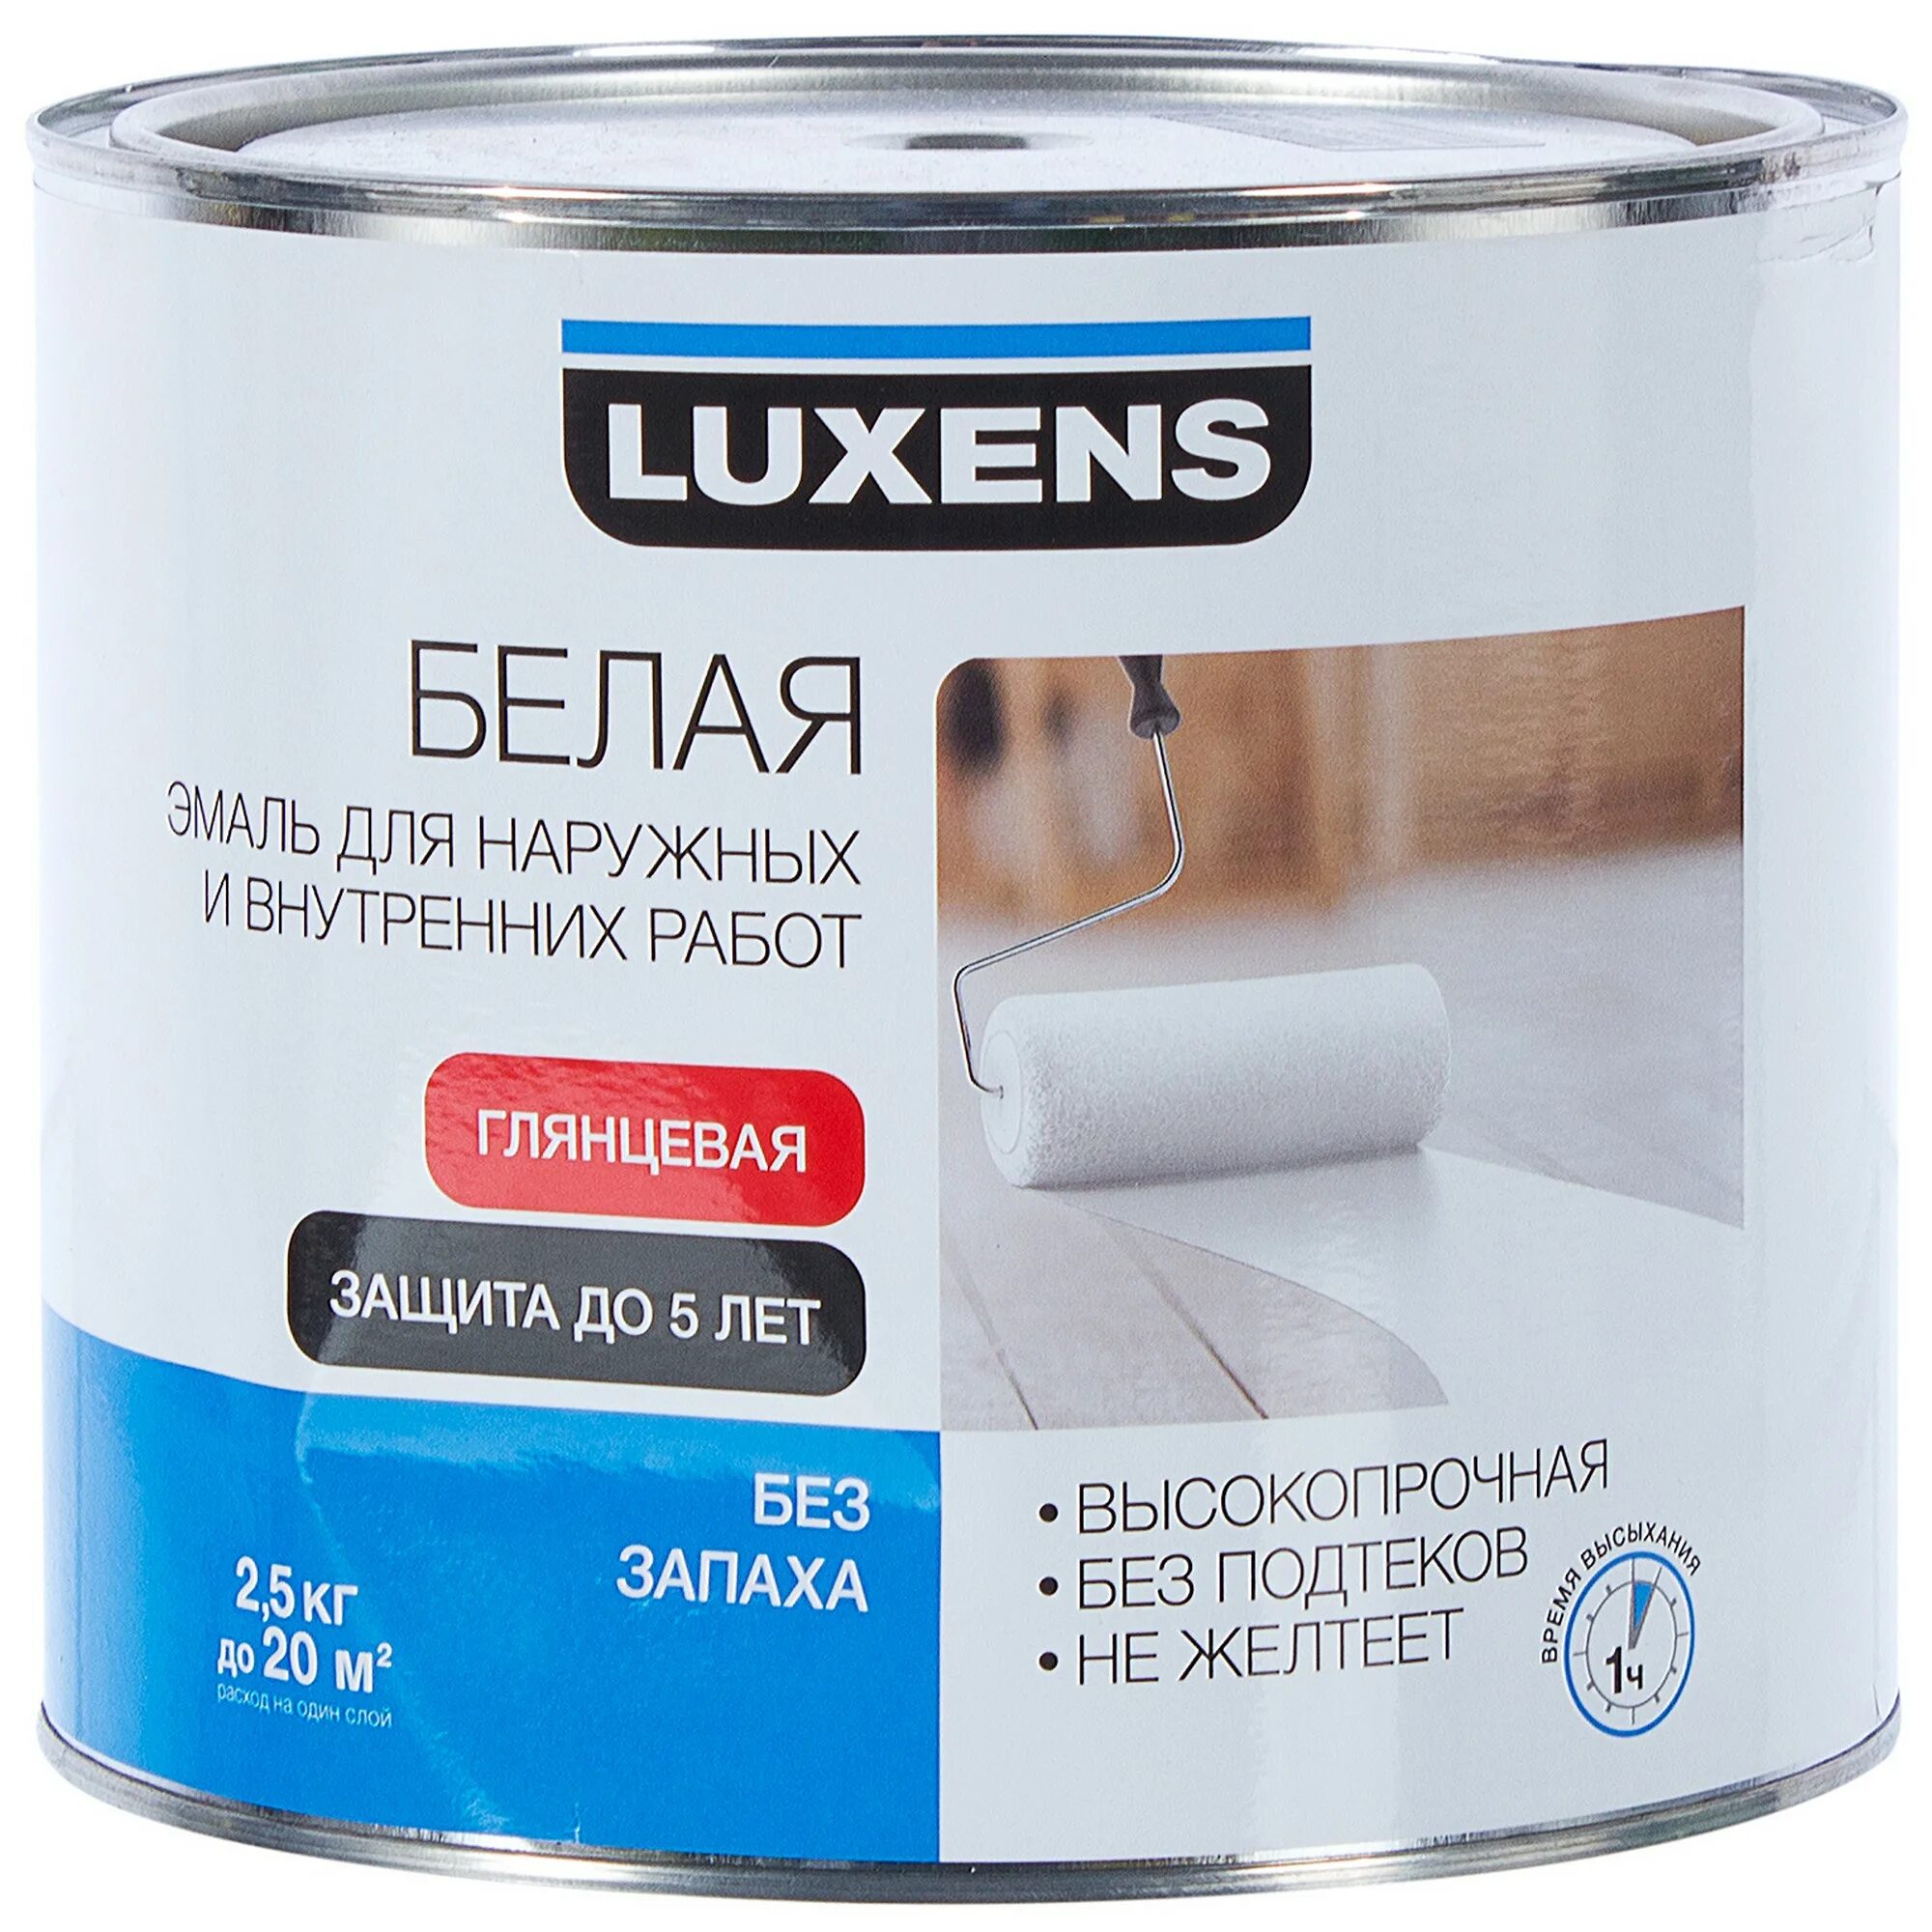 Эмаль Luxens глянцевая цвет белый 2.5 кг. Эмаль универсальная Luxens 2.5 кг нежно-голубой. Эмаль акриловая Luxens глянцевая белая универсальная 2.5 кг. Luxens эмаль. Краска для комнаты без запаха